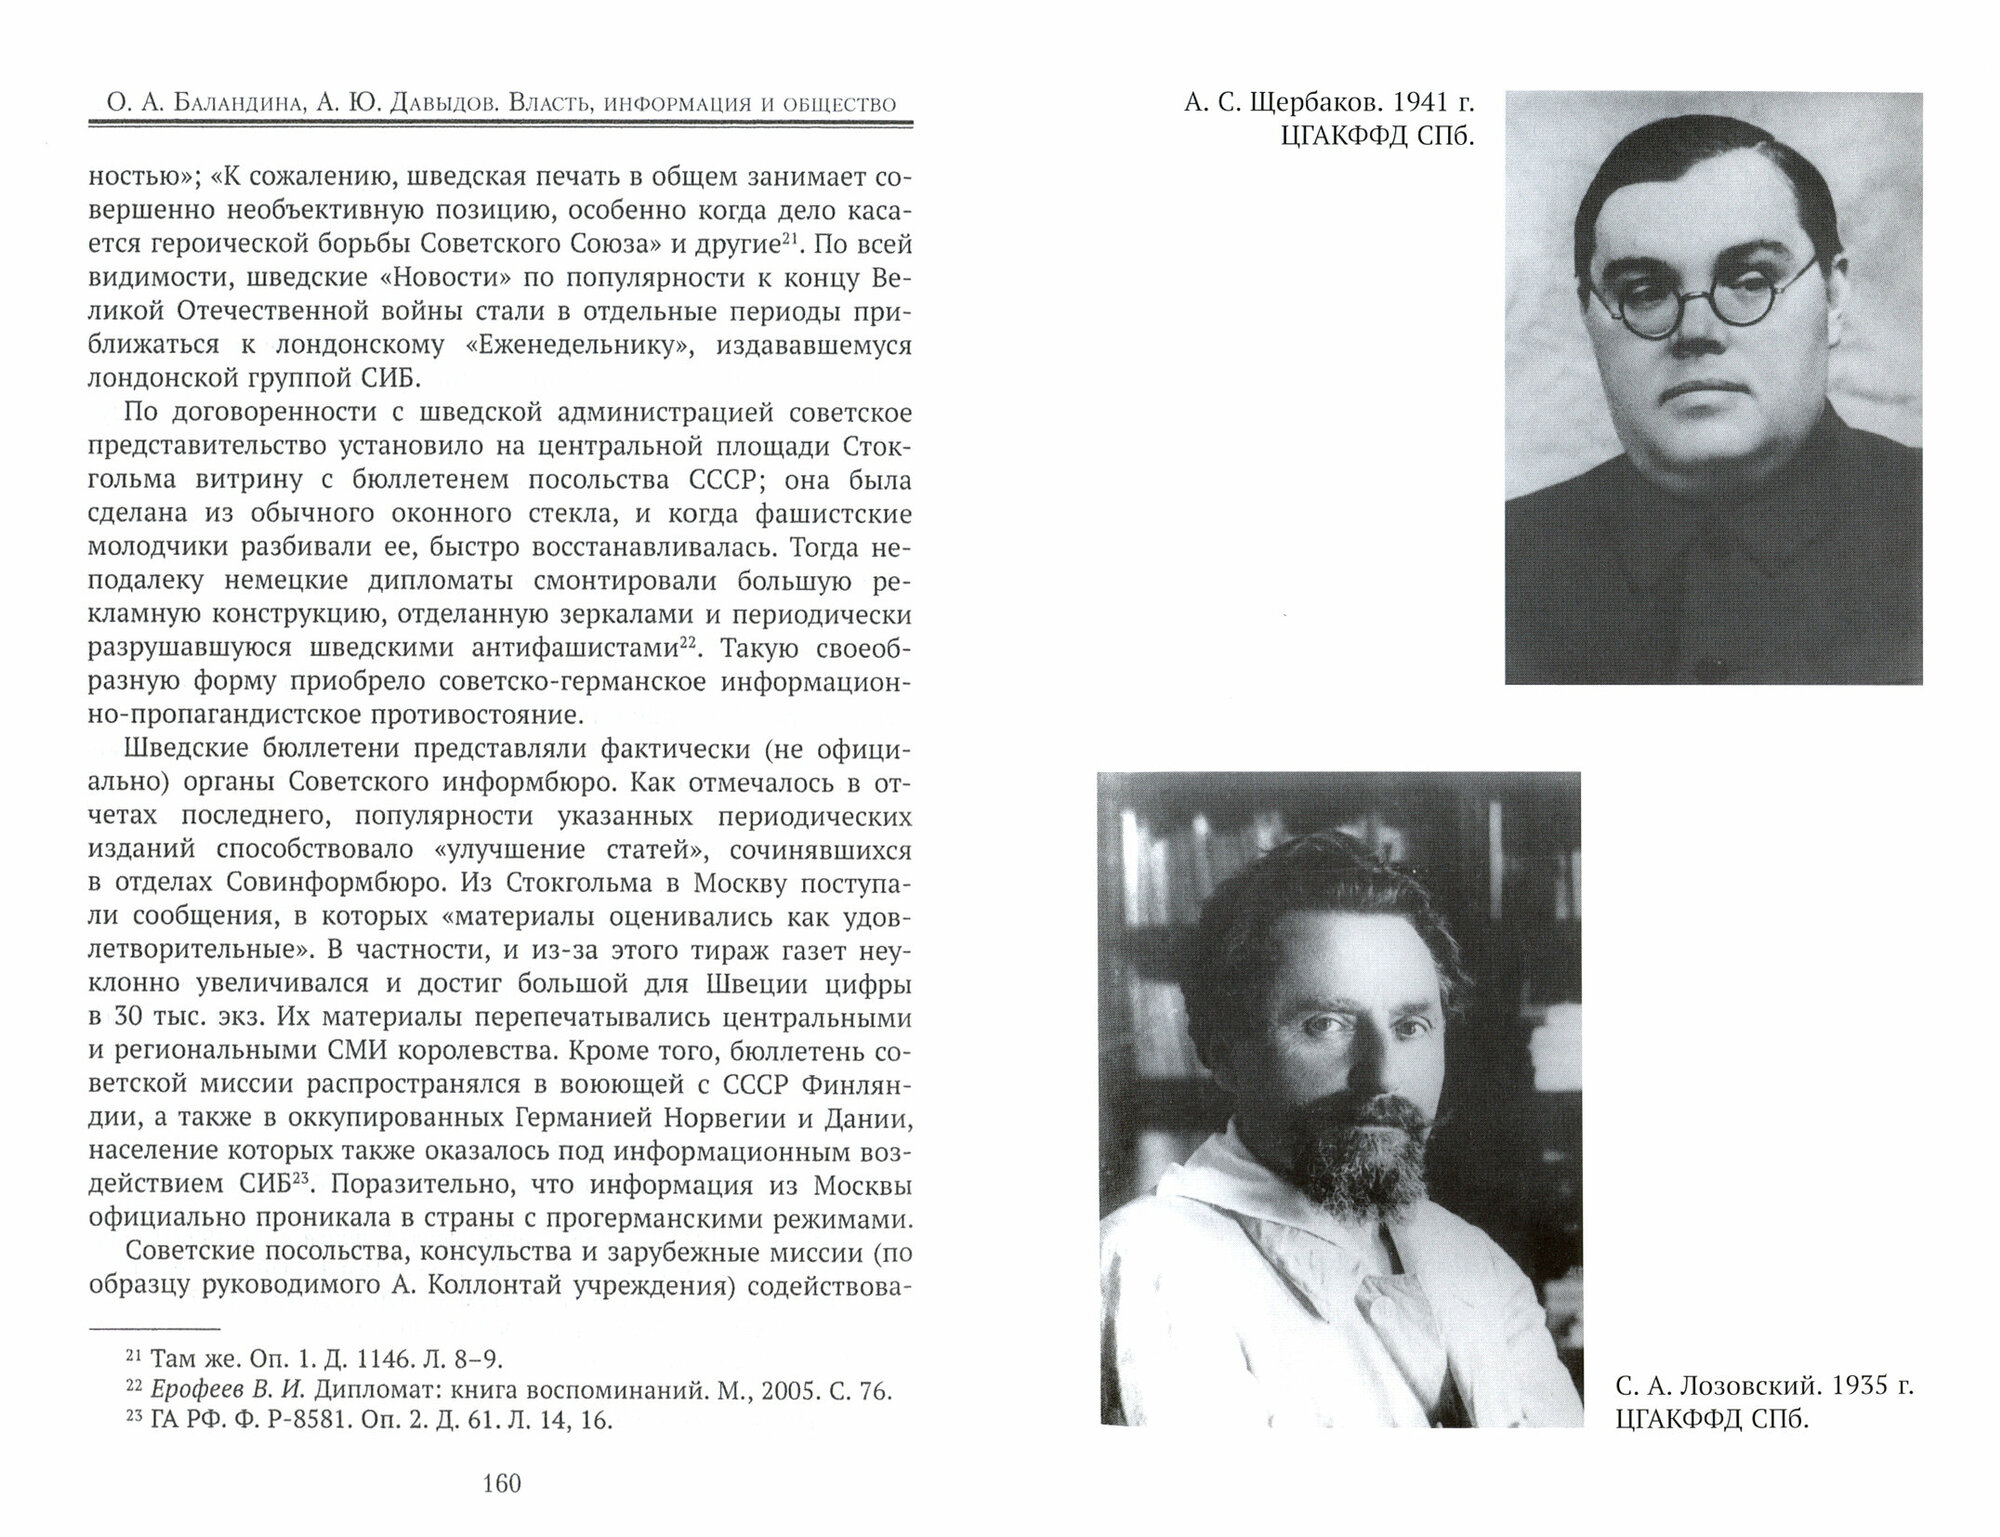 Власть, информация и общество. Их взаимосвязи в деятельности Советского информбюро в условиях ВОВ - фото №7